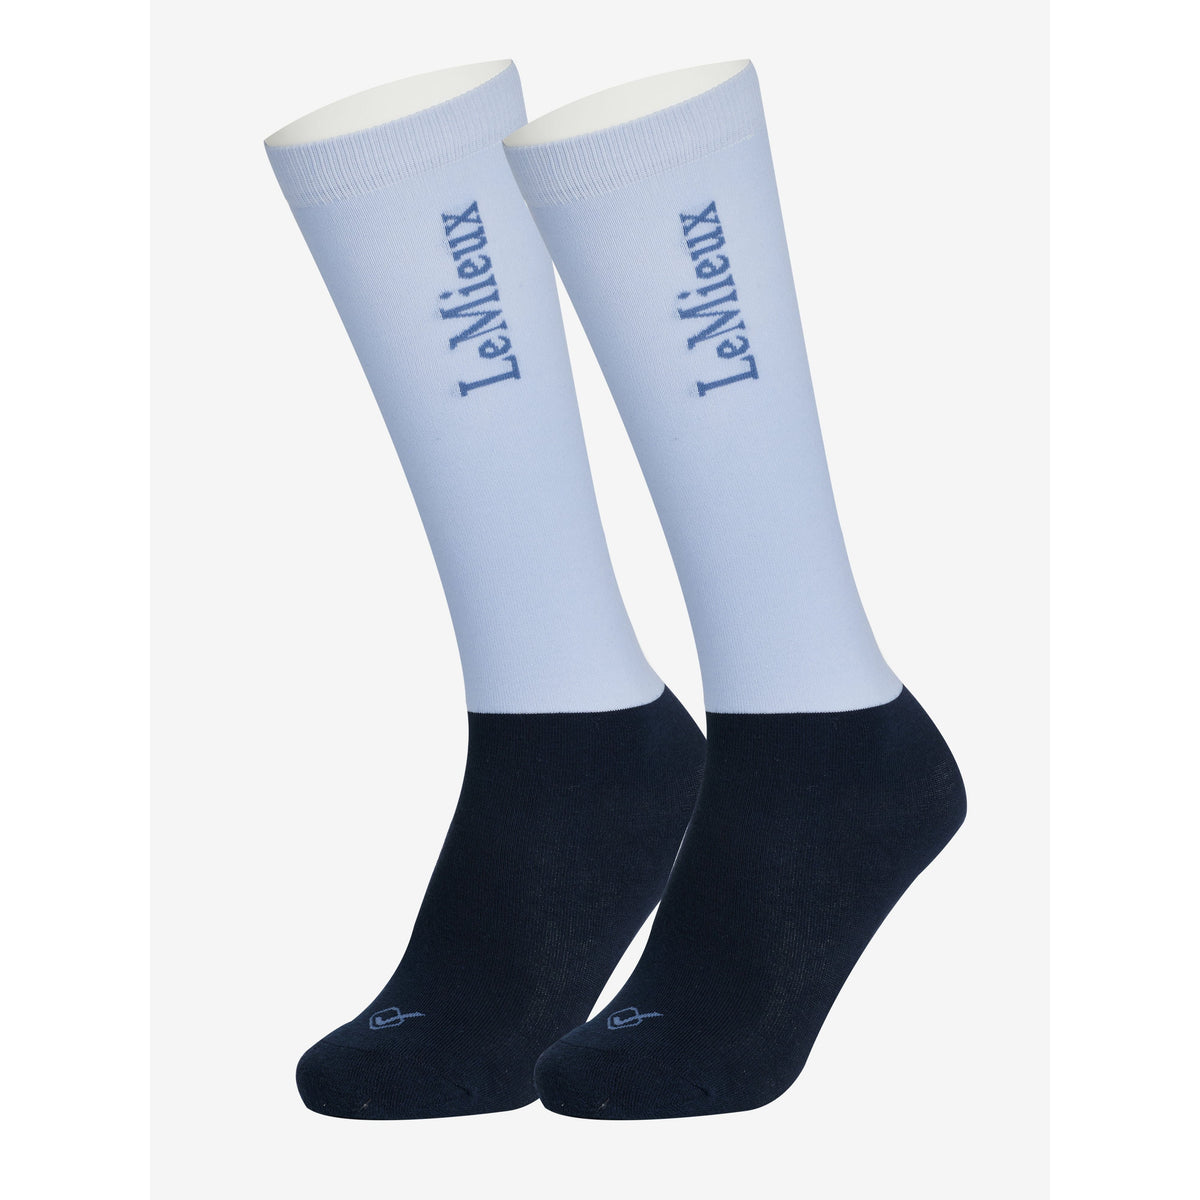 LEMIEUX MIST / S LeMieux Competition Socks - Twin Pack in Mist